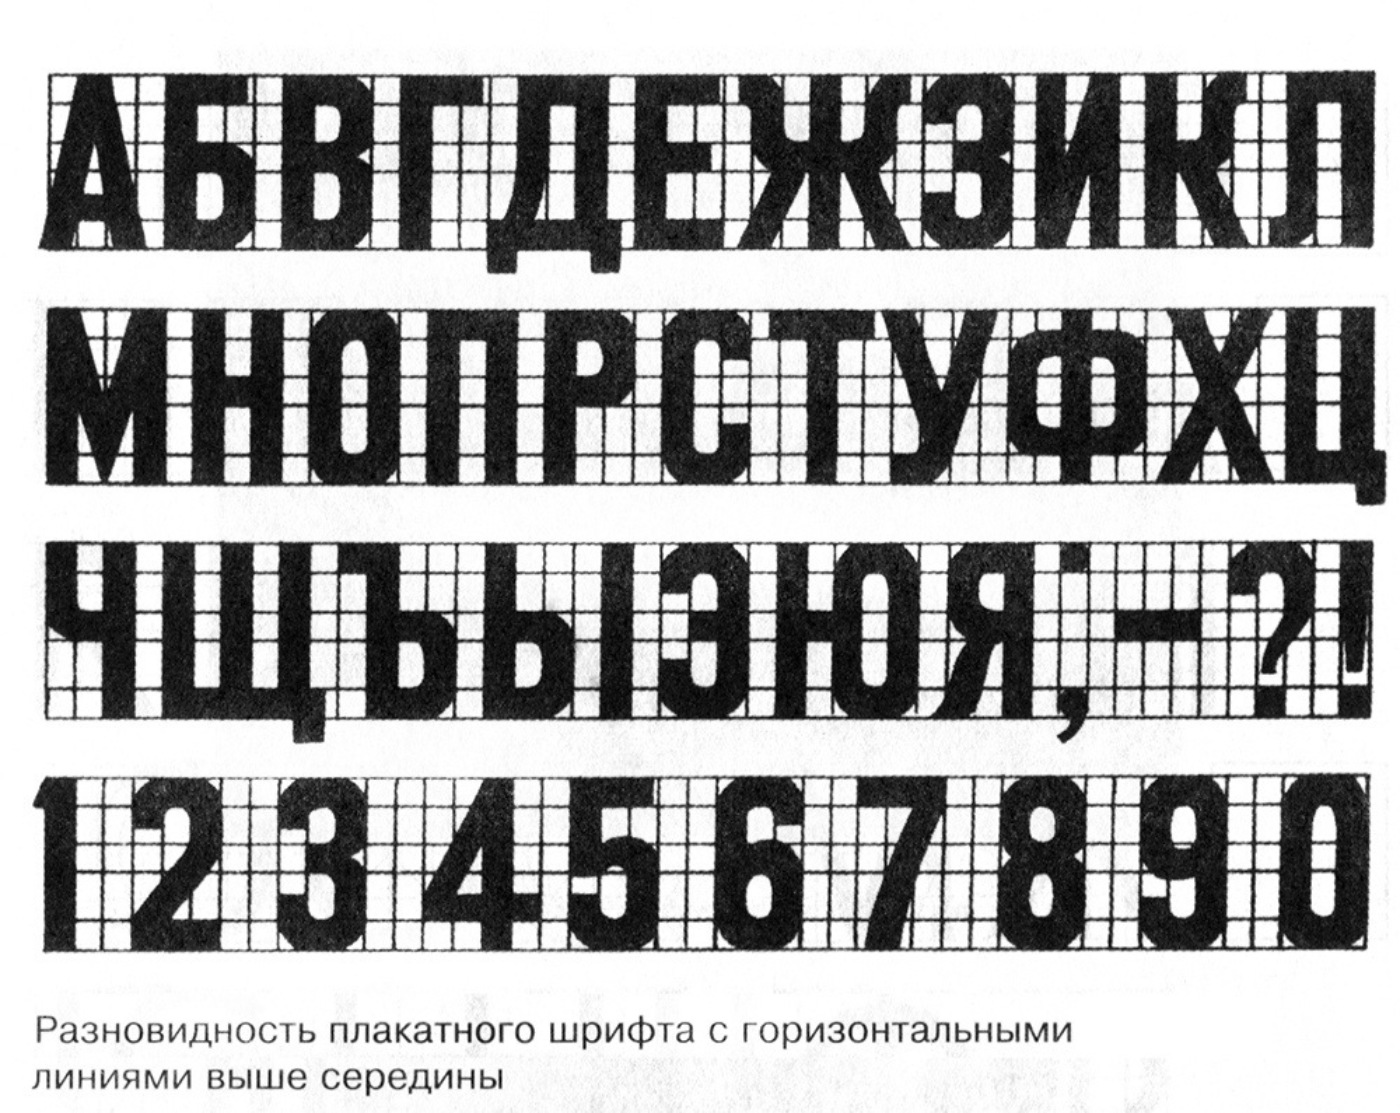 Значение слова шрифты. Рубленный шрифт. Печатный шрифт. Плакатный шрифт. Плакатные шрифты русские.